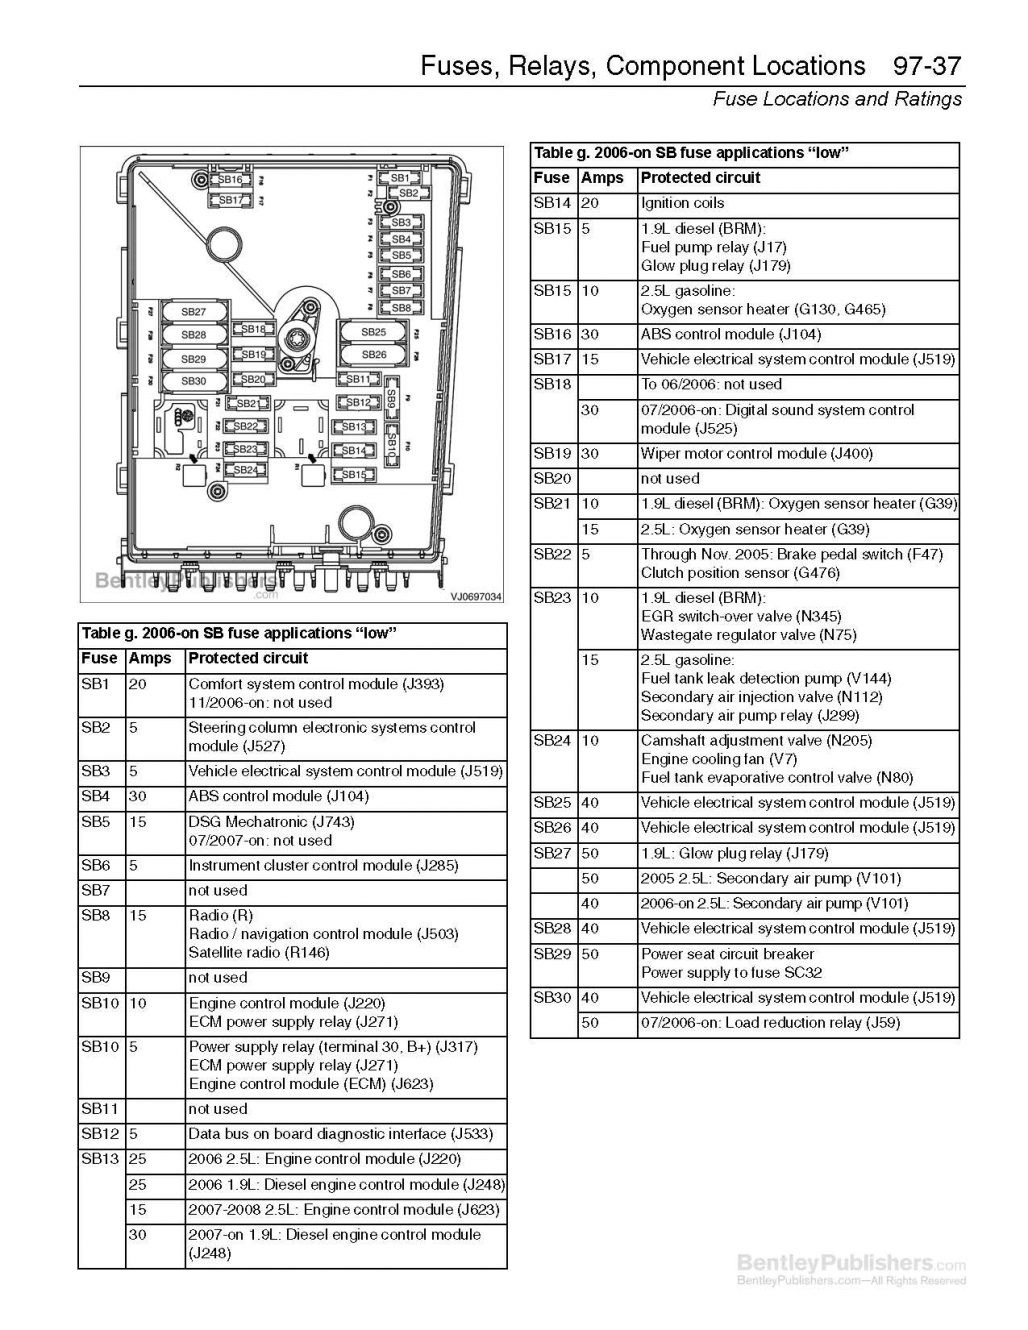 Diagram Wiring Diagram For 1994 Jetta Full Version Hd Quality 1994 Jetta Diagramin Tappasinmamujada It